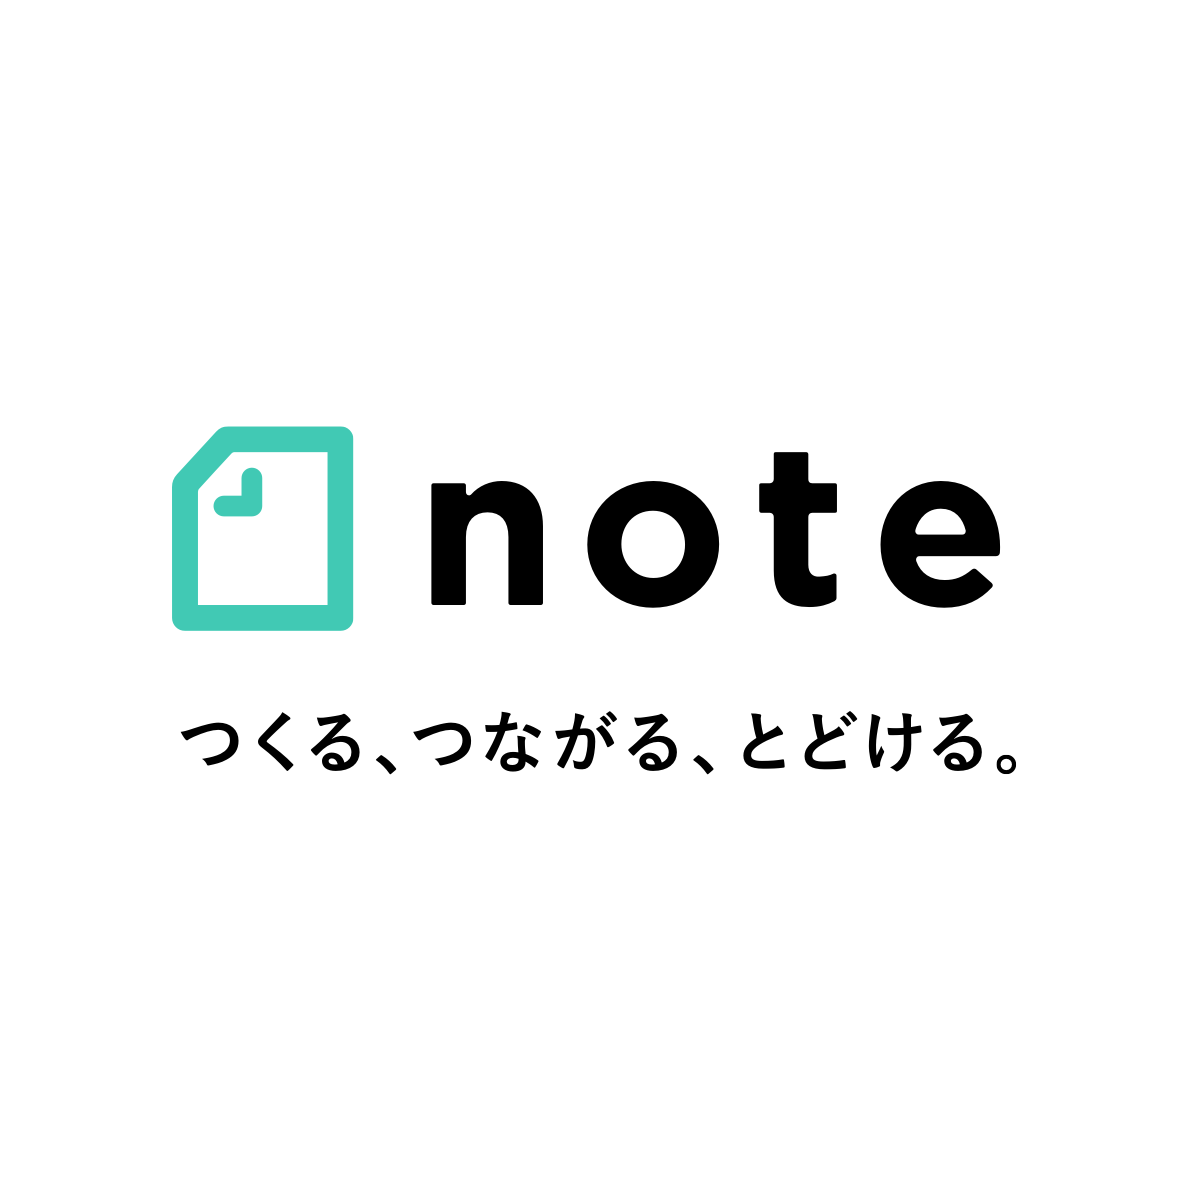 「note」(ノート) 始めました。（有料記事販売のみで利用予定。）